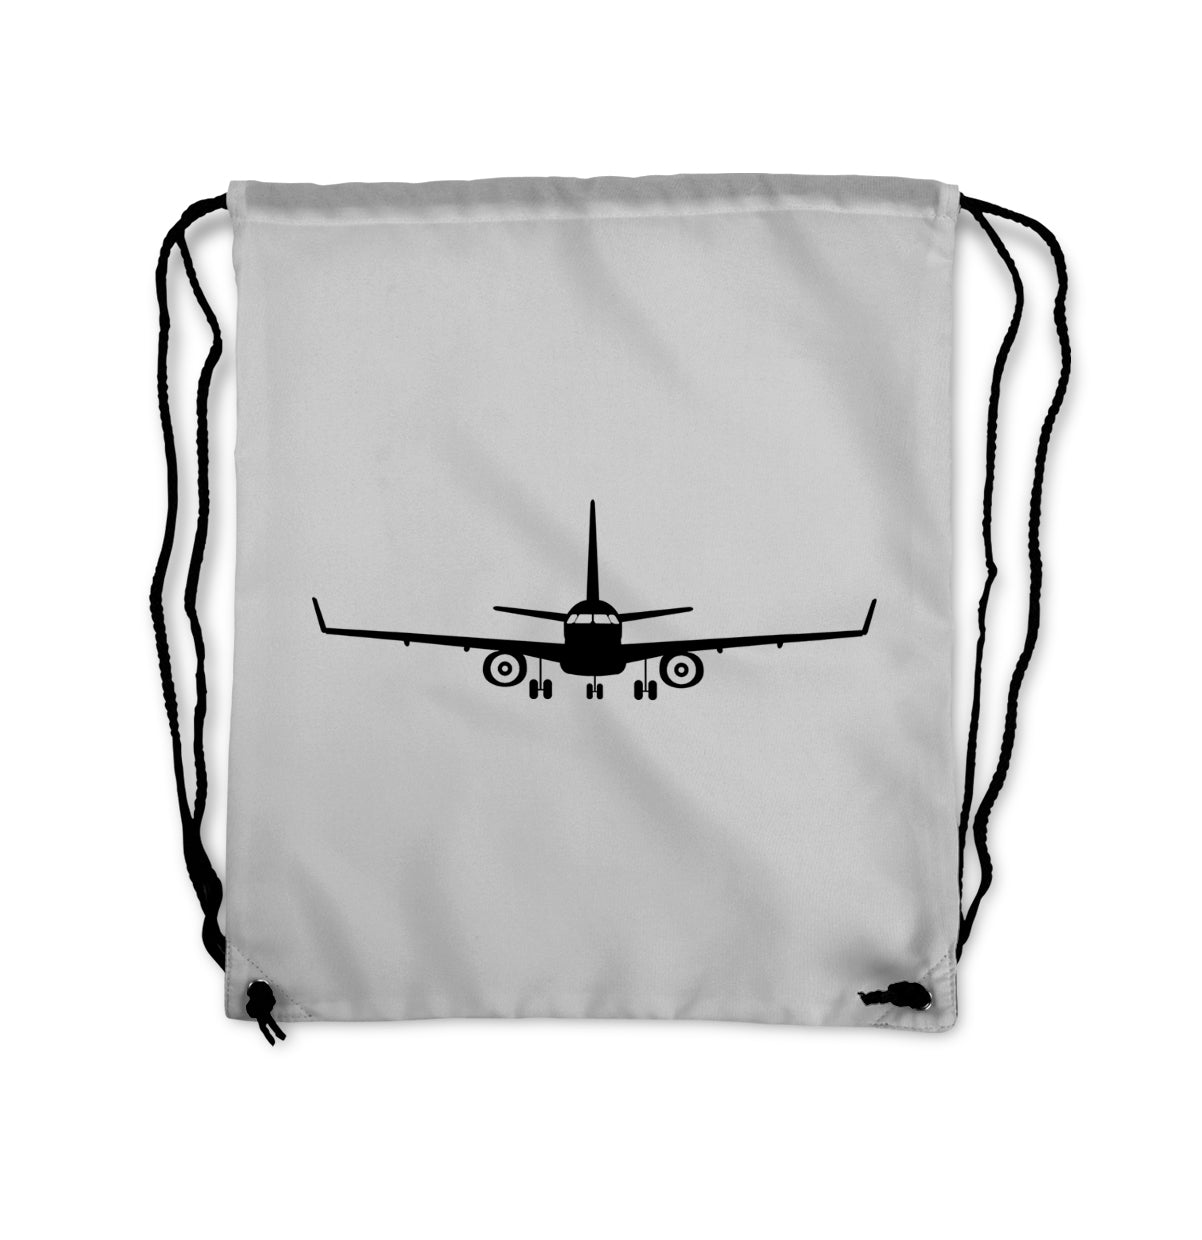 Embraer E-190 Silhouette Plane Designed Drawstring Bags